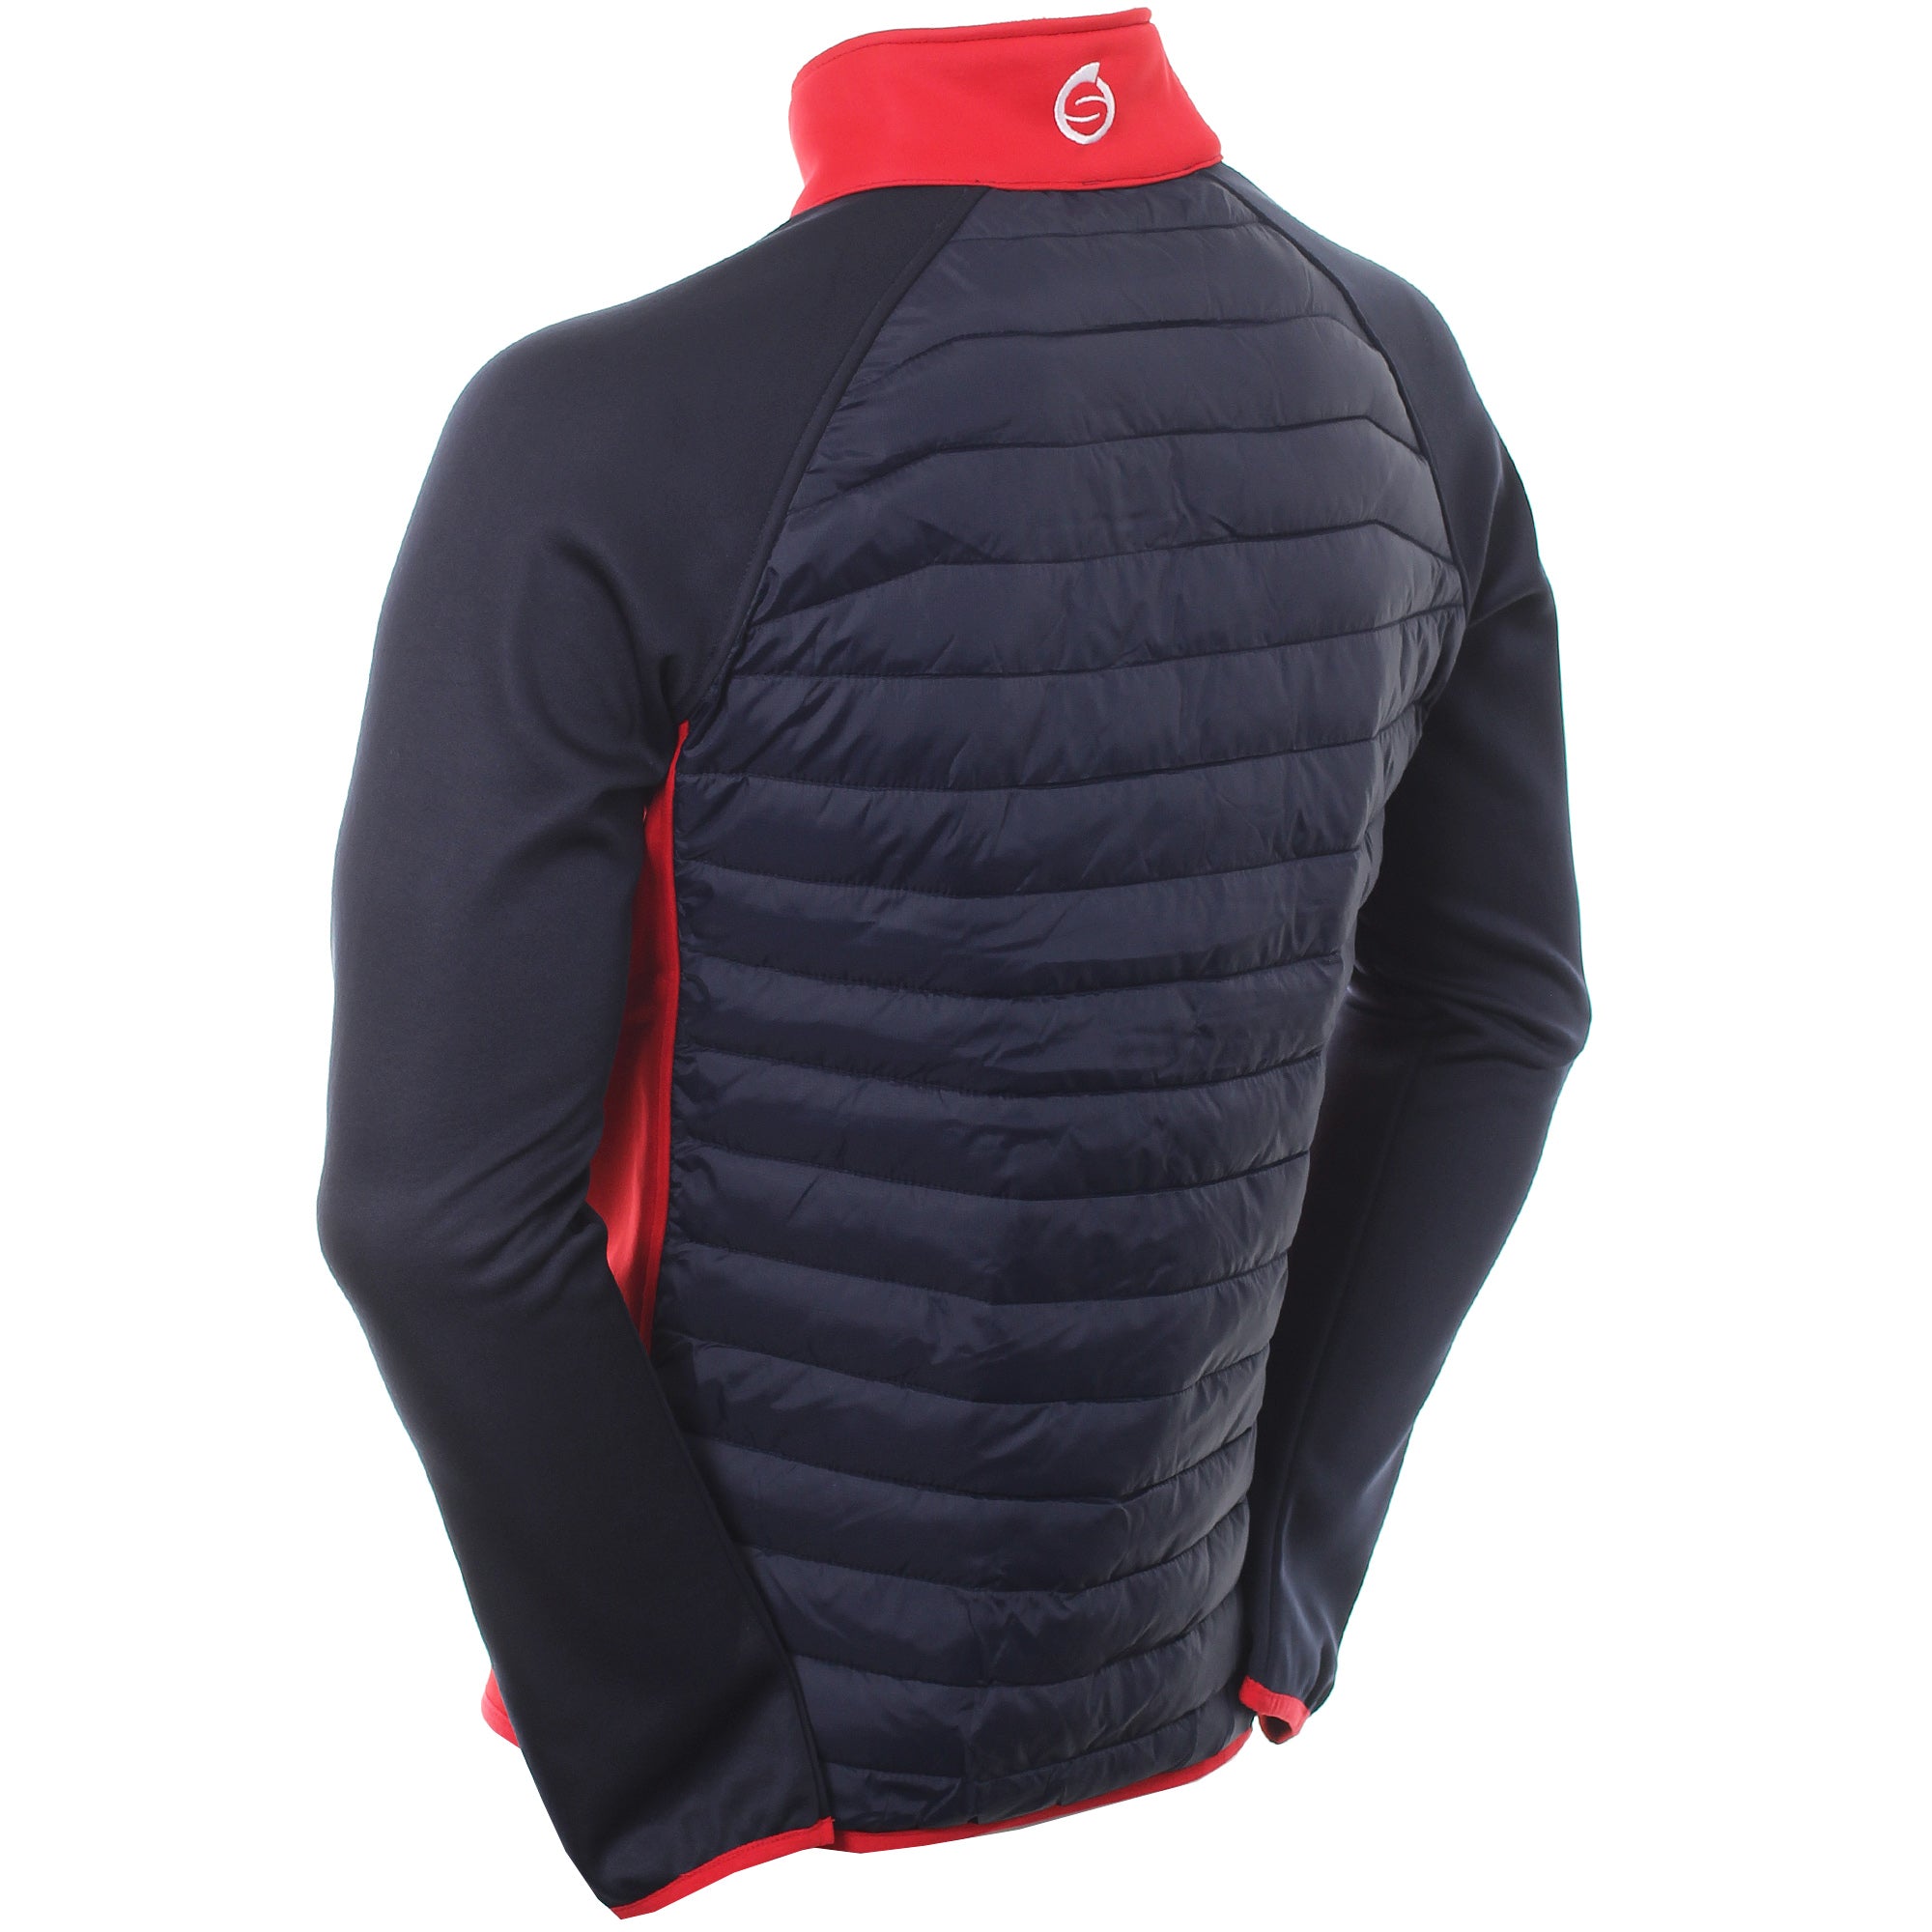 sunderland-golf-zermatt-padded-jacket-navy-red-white